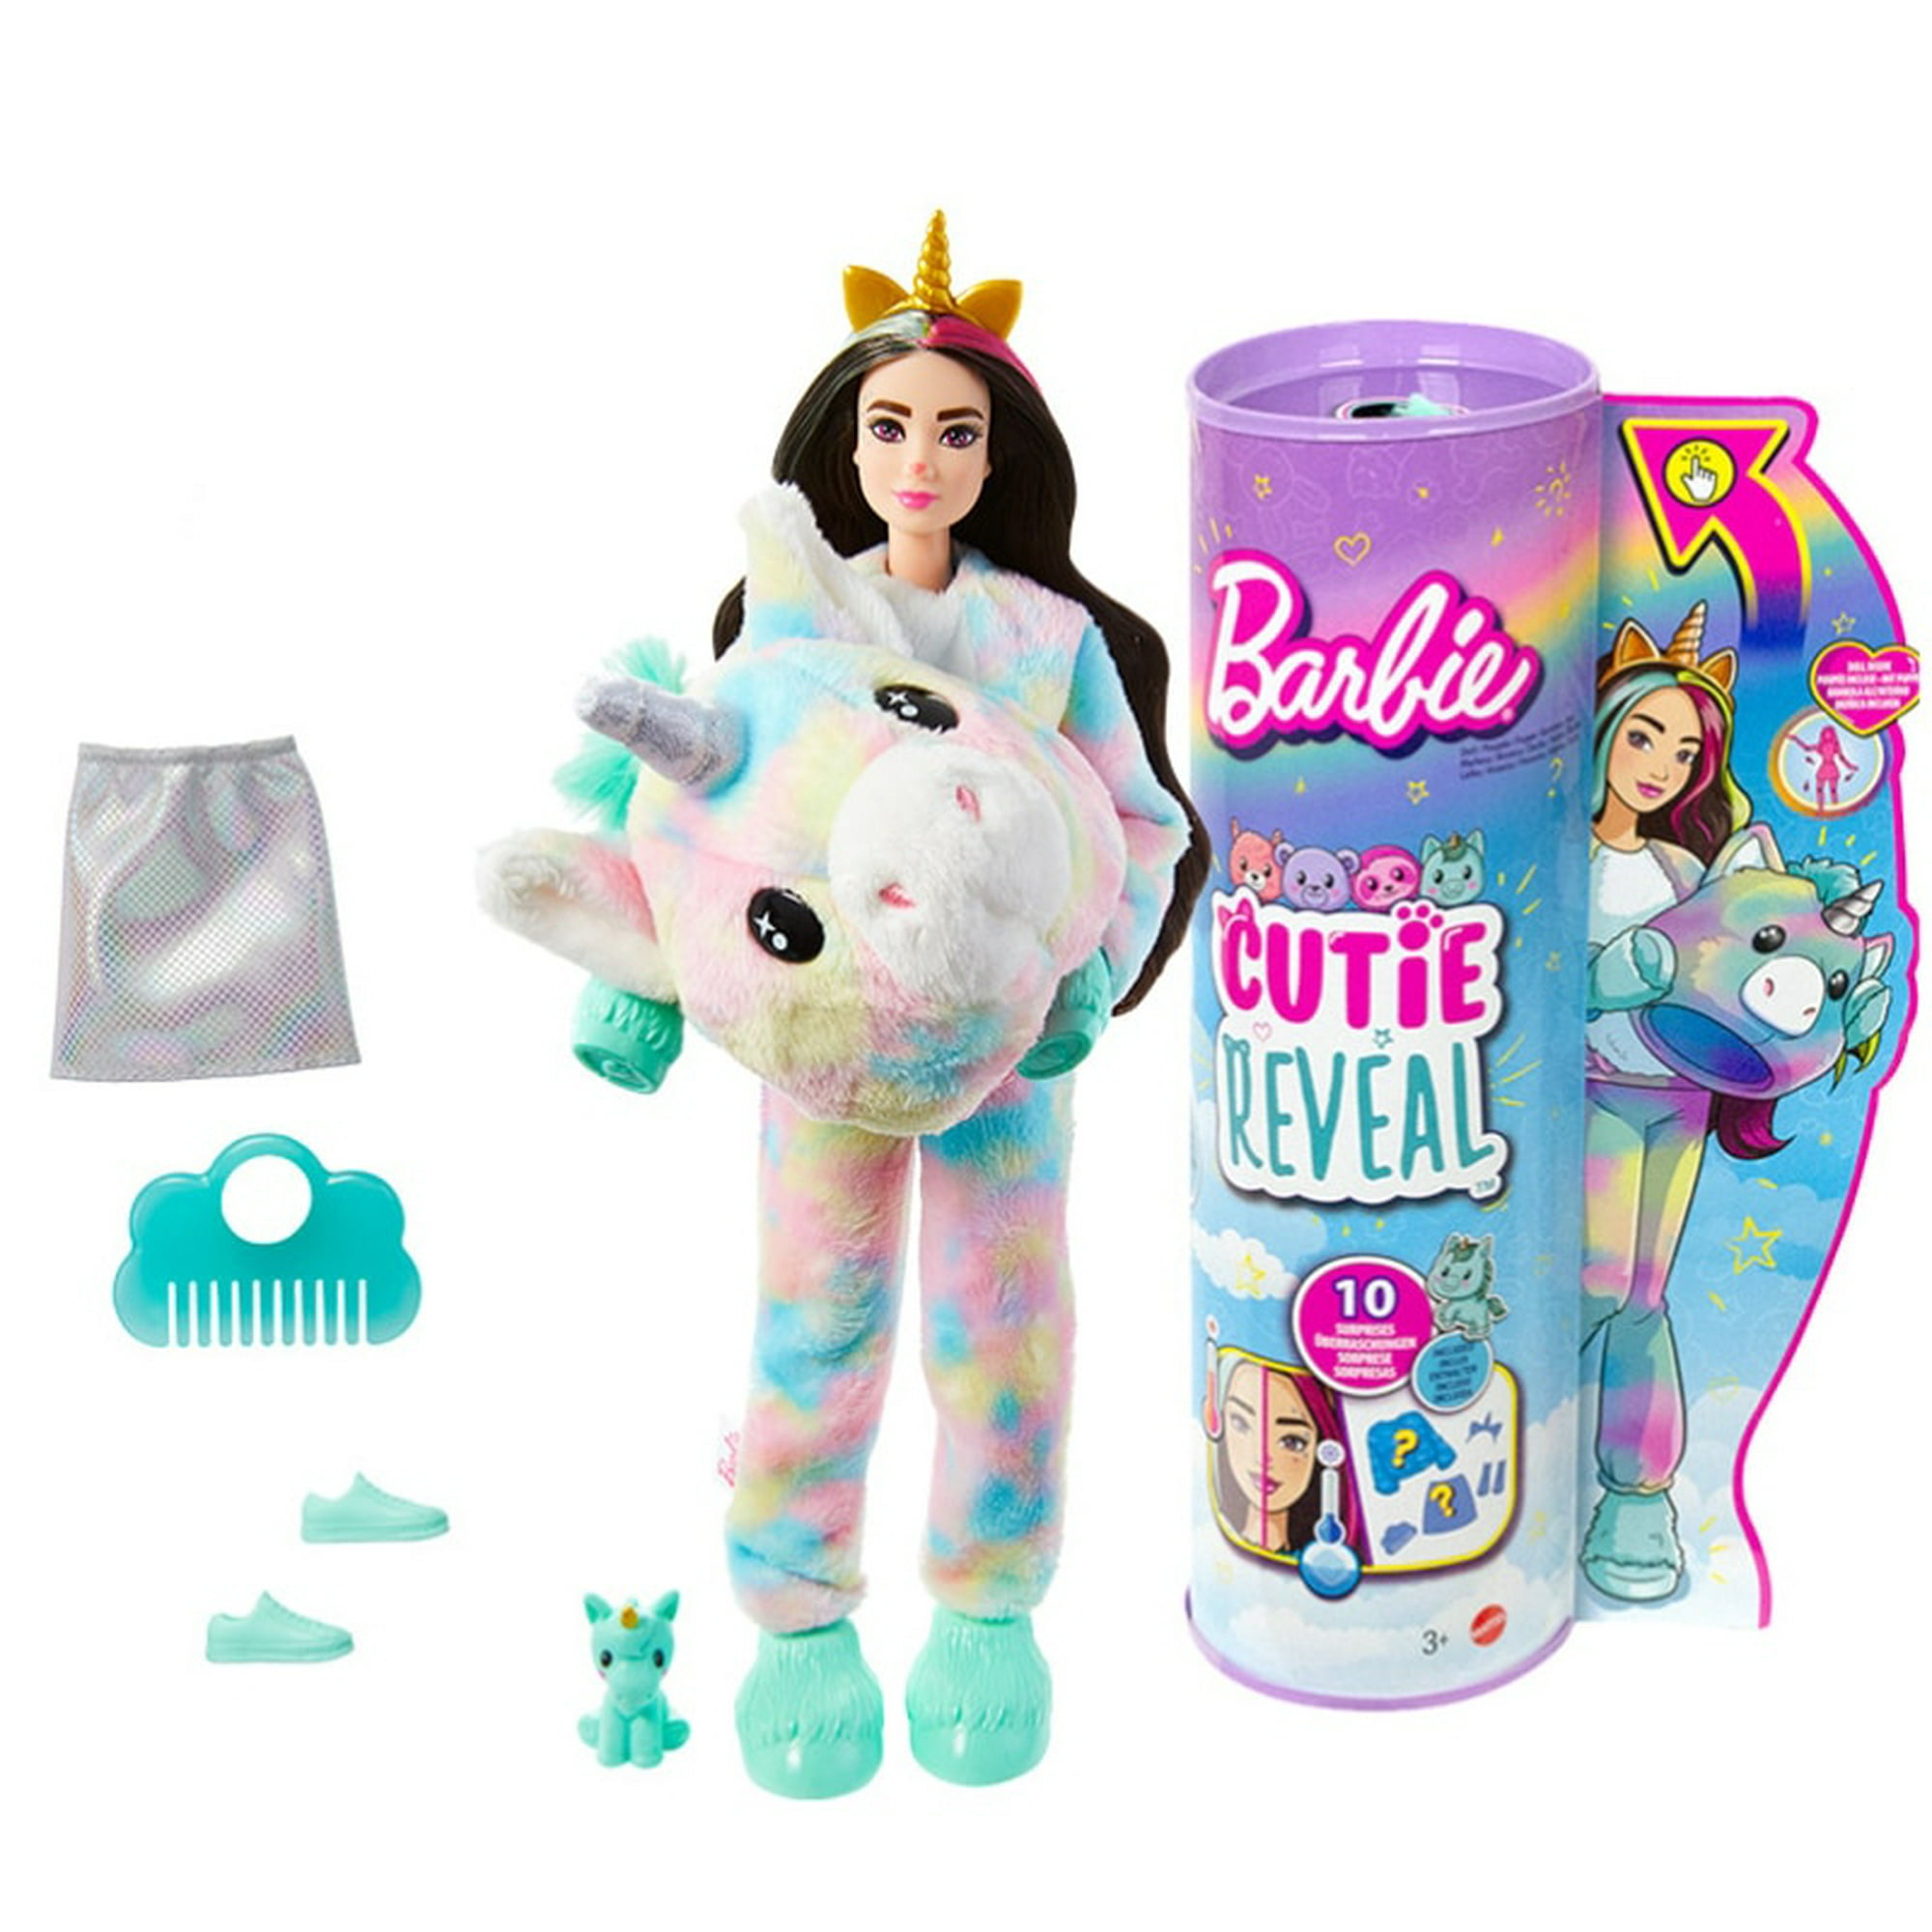 Muñeca y accesorios Barbie Reveal Llama Fantasy Series